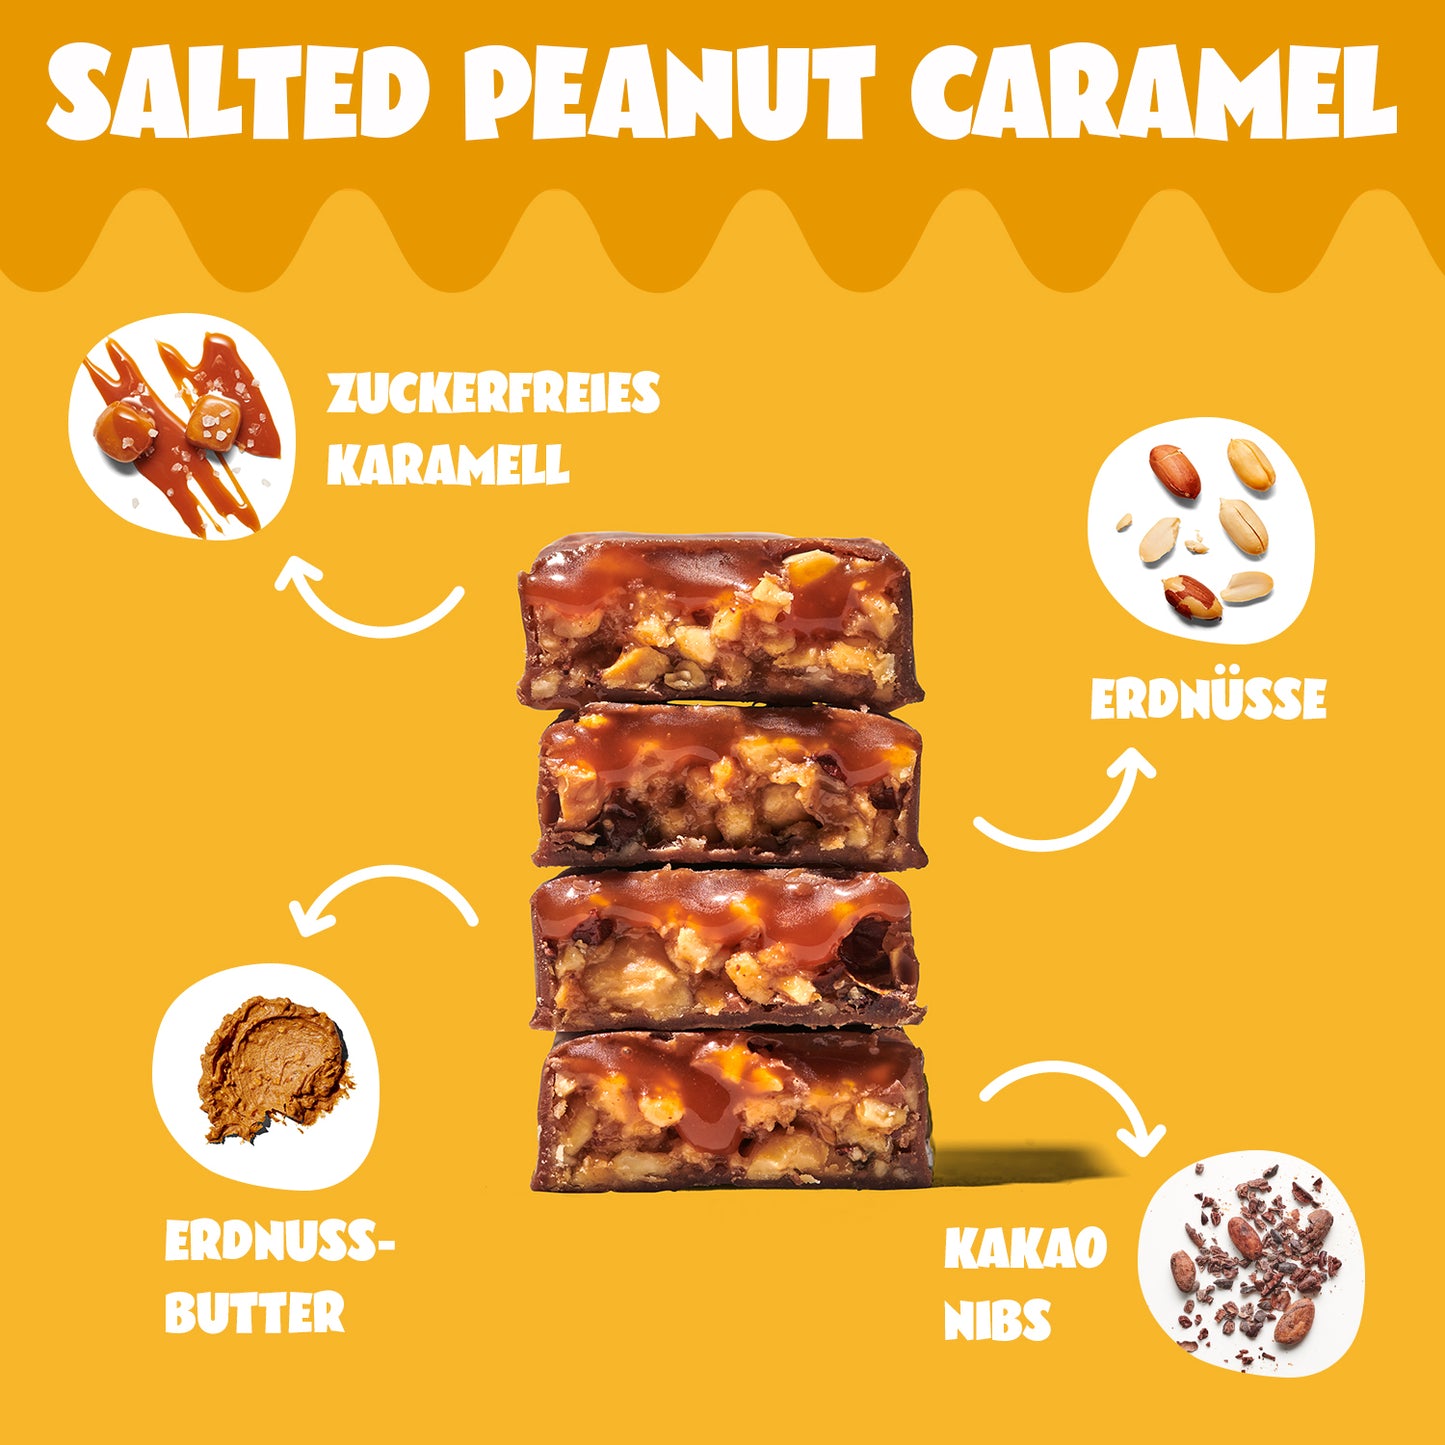 Salted peanut caramel